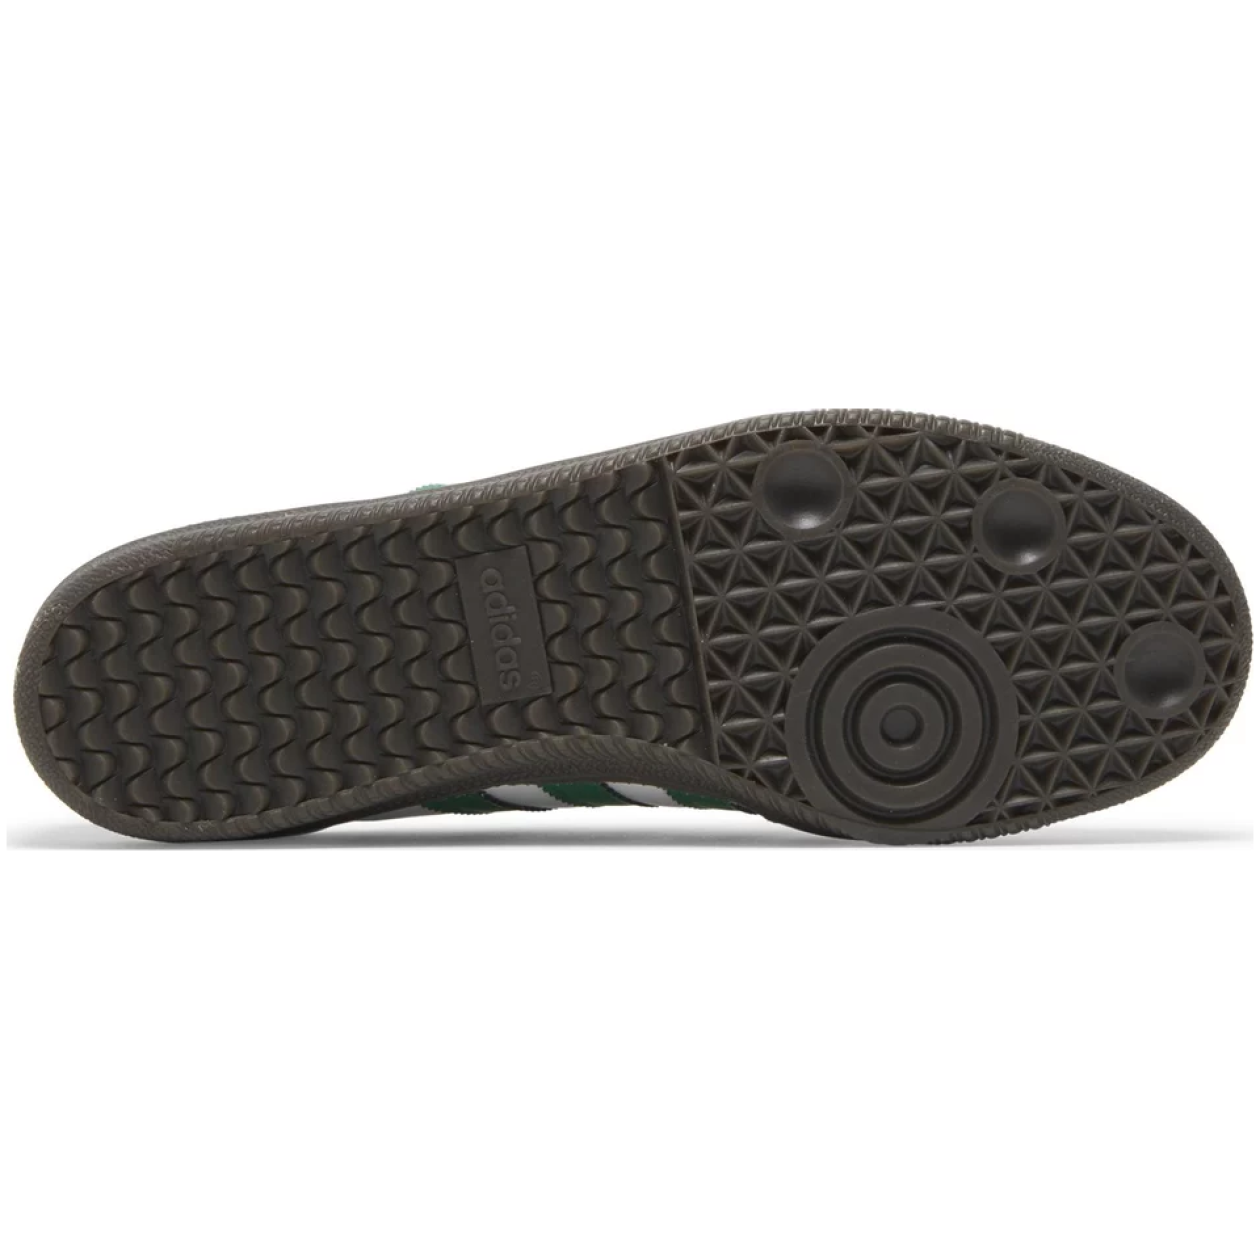 Adidas Samba OG Footwear White Green Supplier Color IG1024 - Sepsale